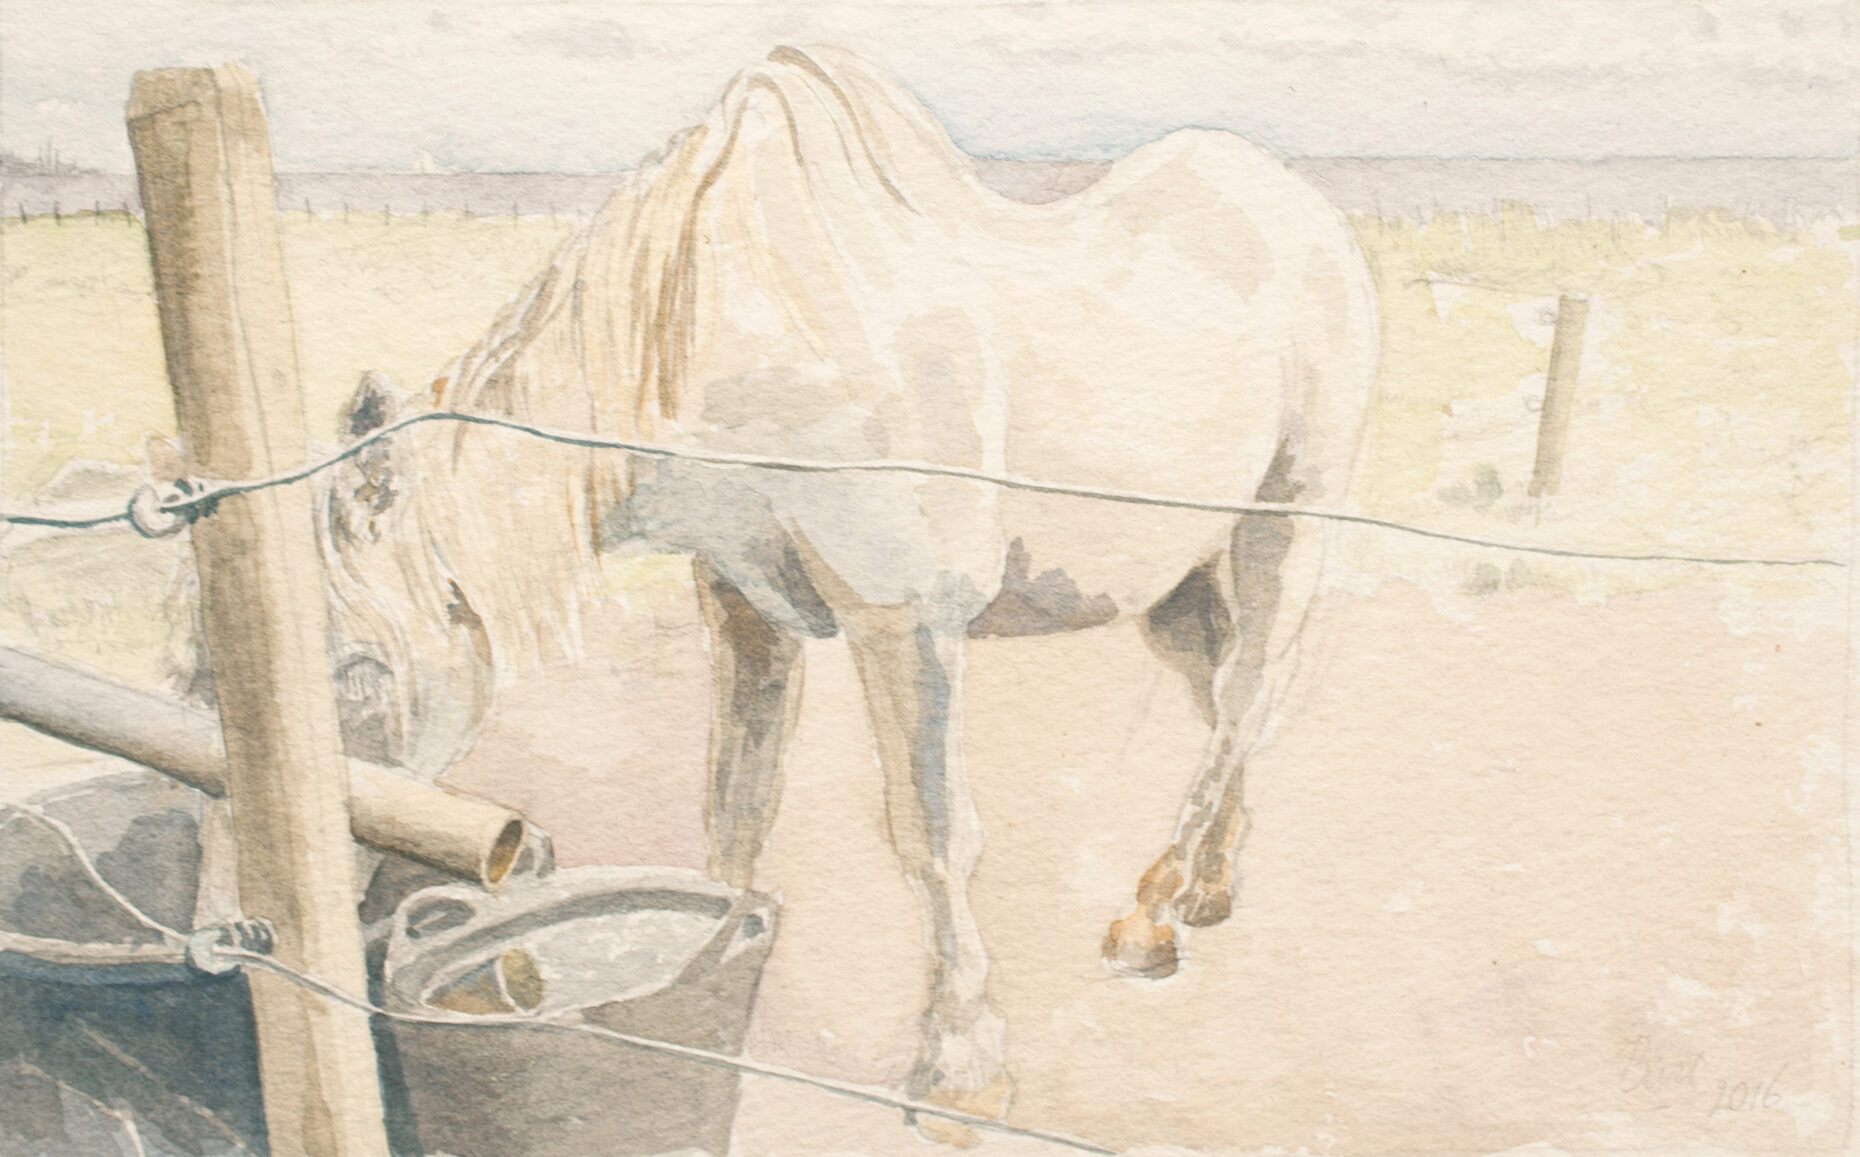 "Paardje met dorst, Vlieland", 2016